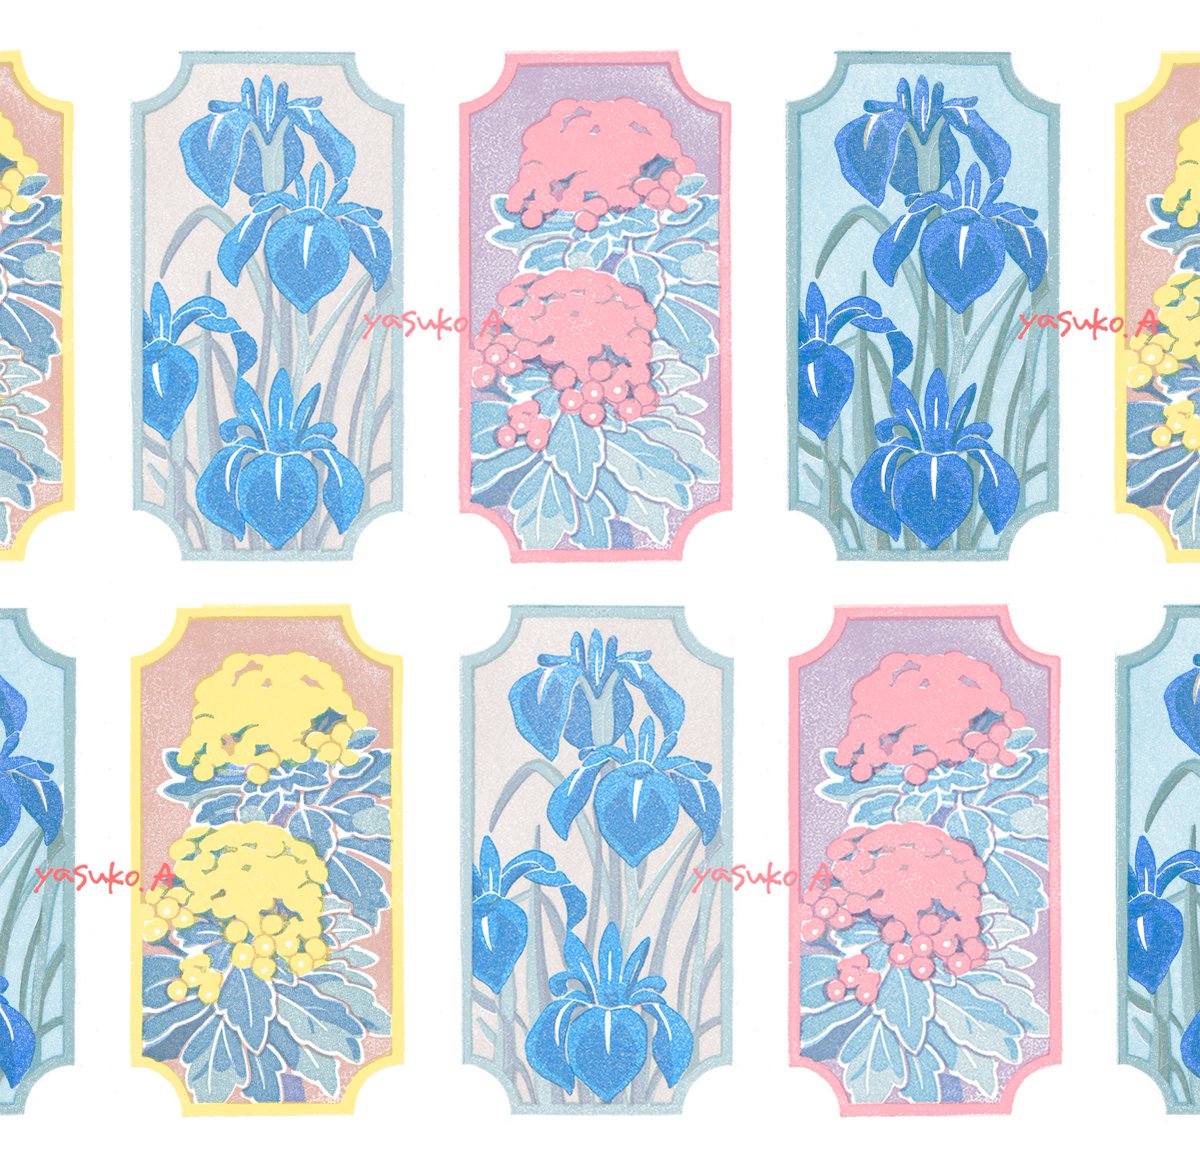 「#お花作品鑑賞会 ありすぎて選べない 」|アオヤマヤスコ yasuko aoyamαのイラスト